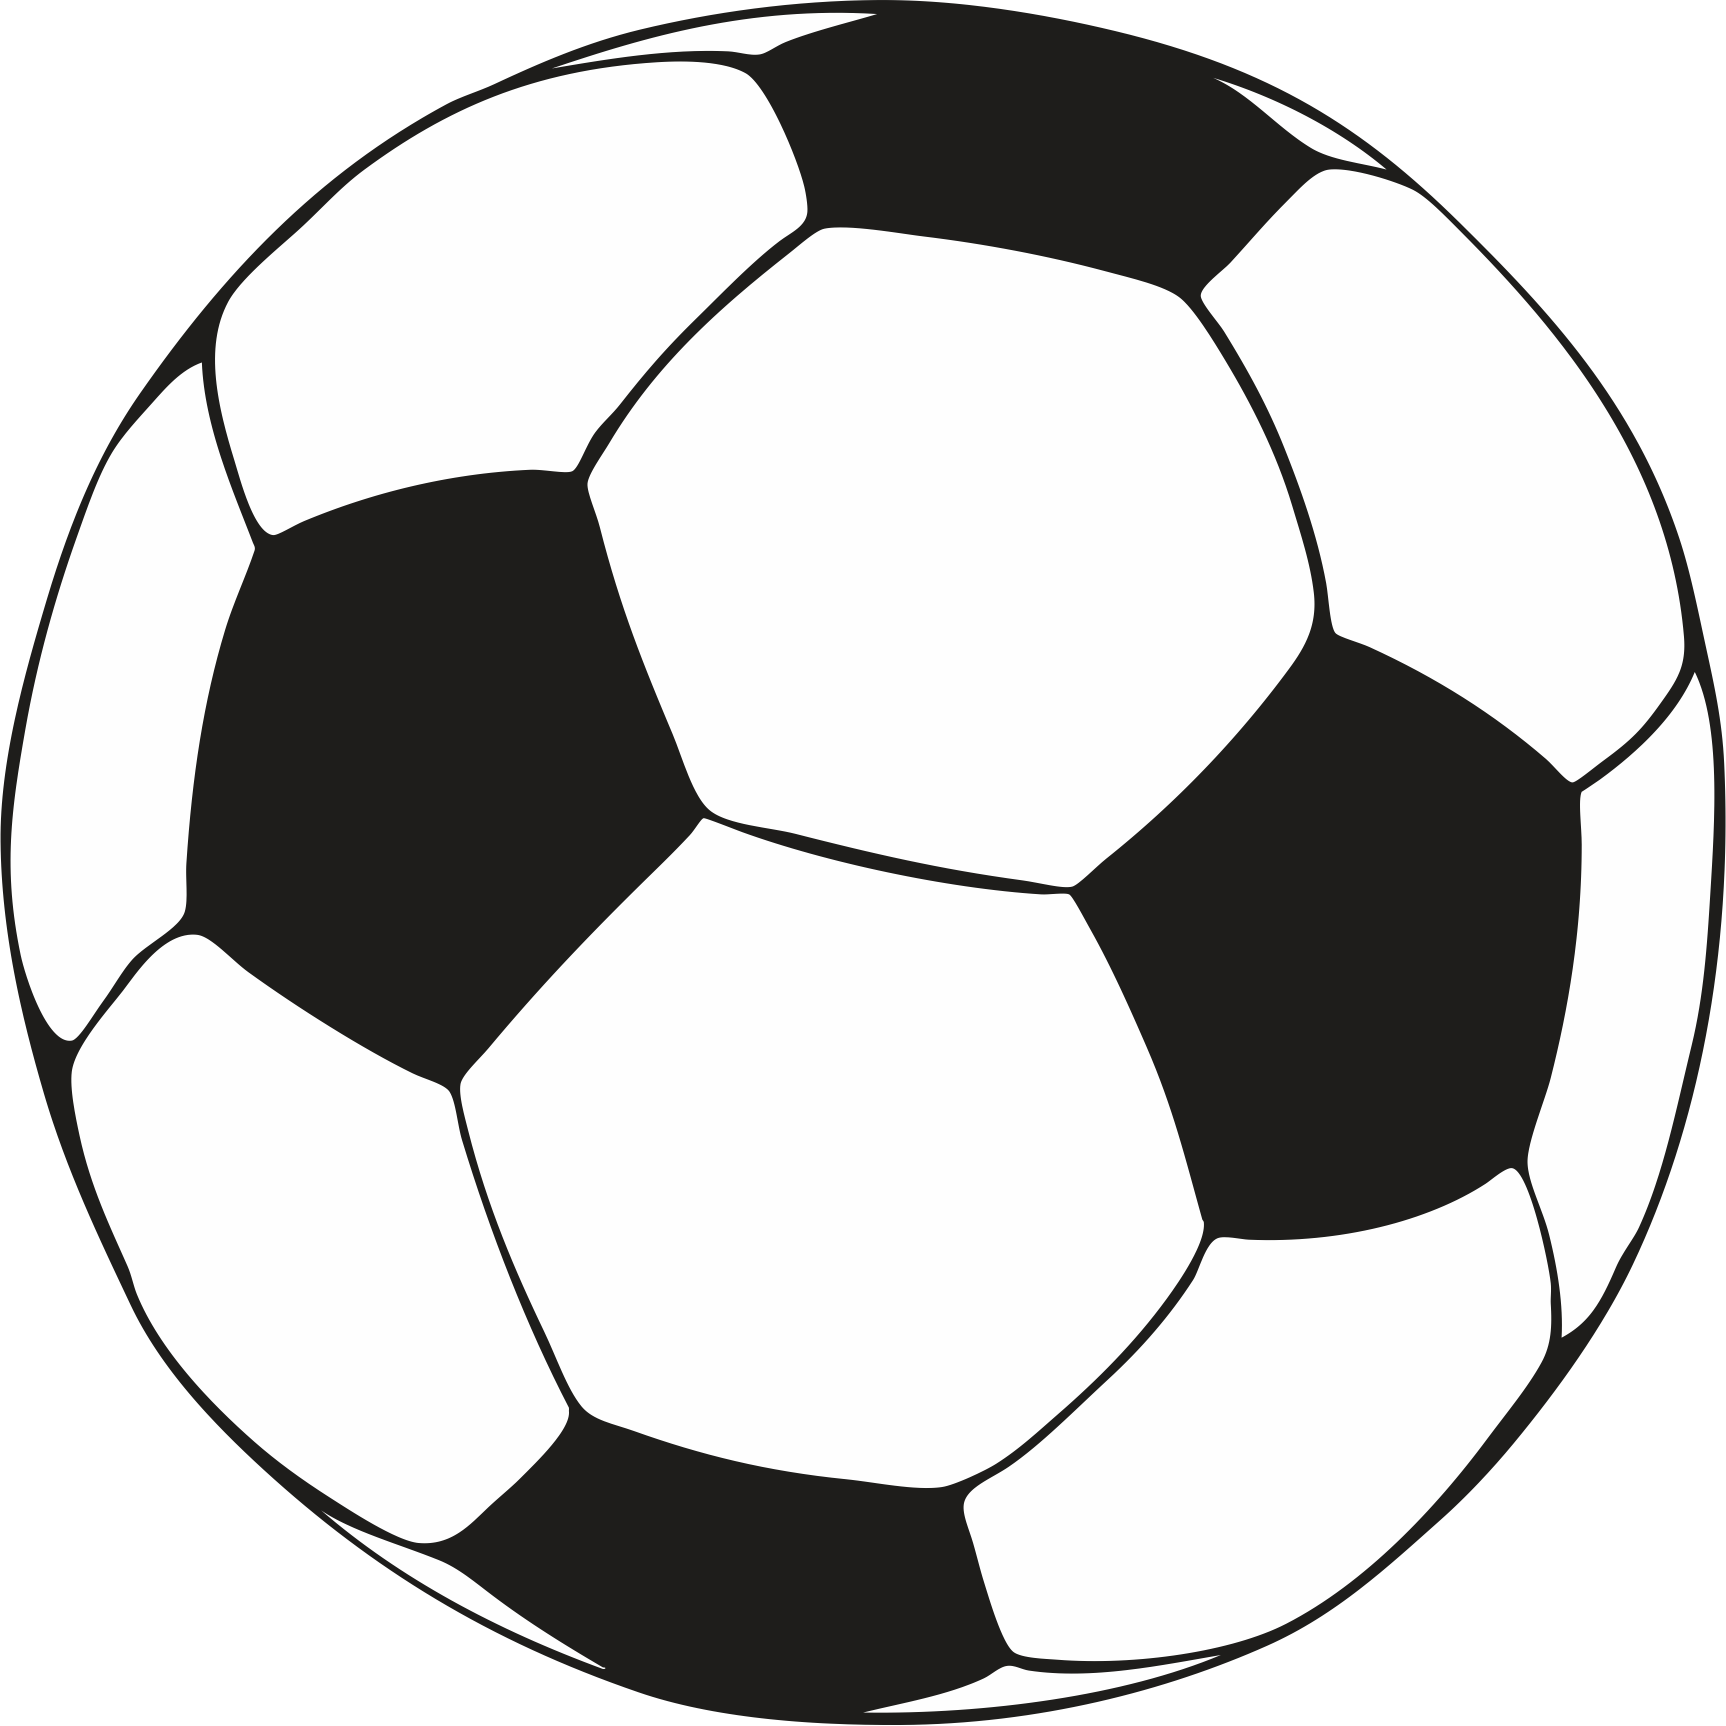 White soccer ball clipart